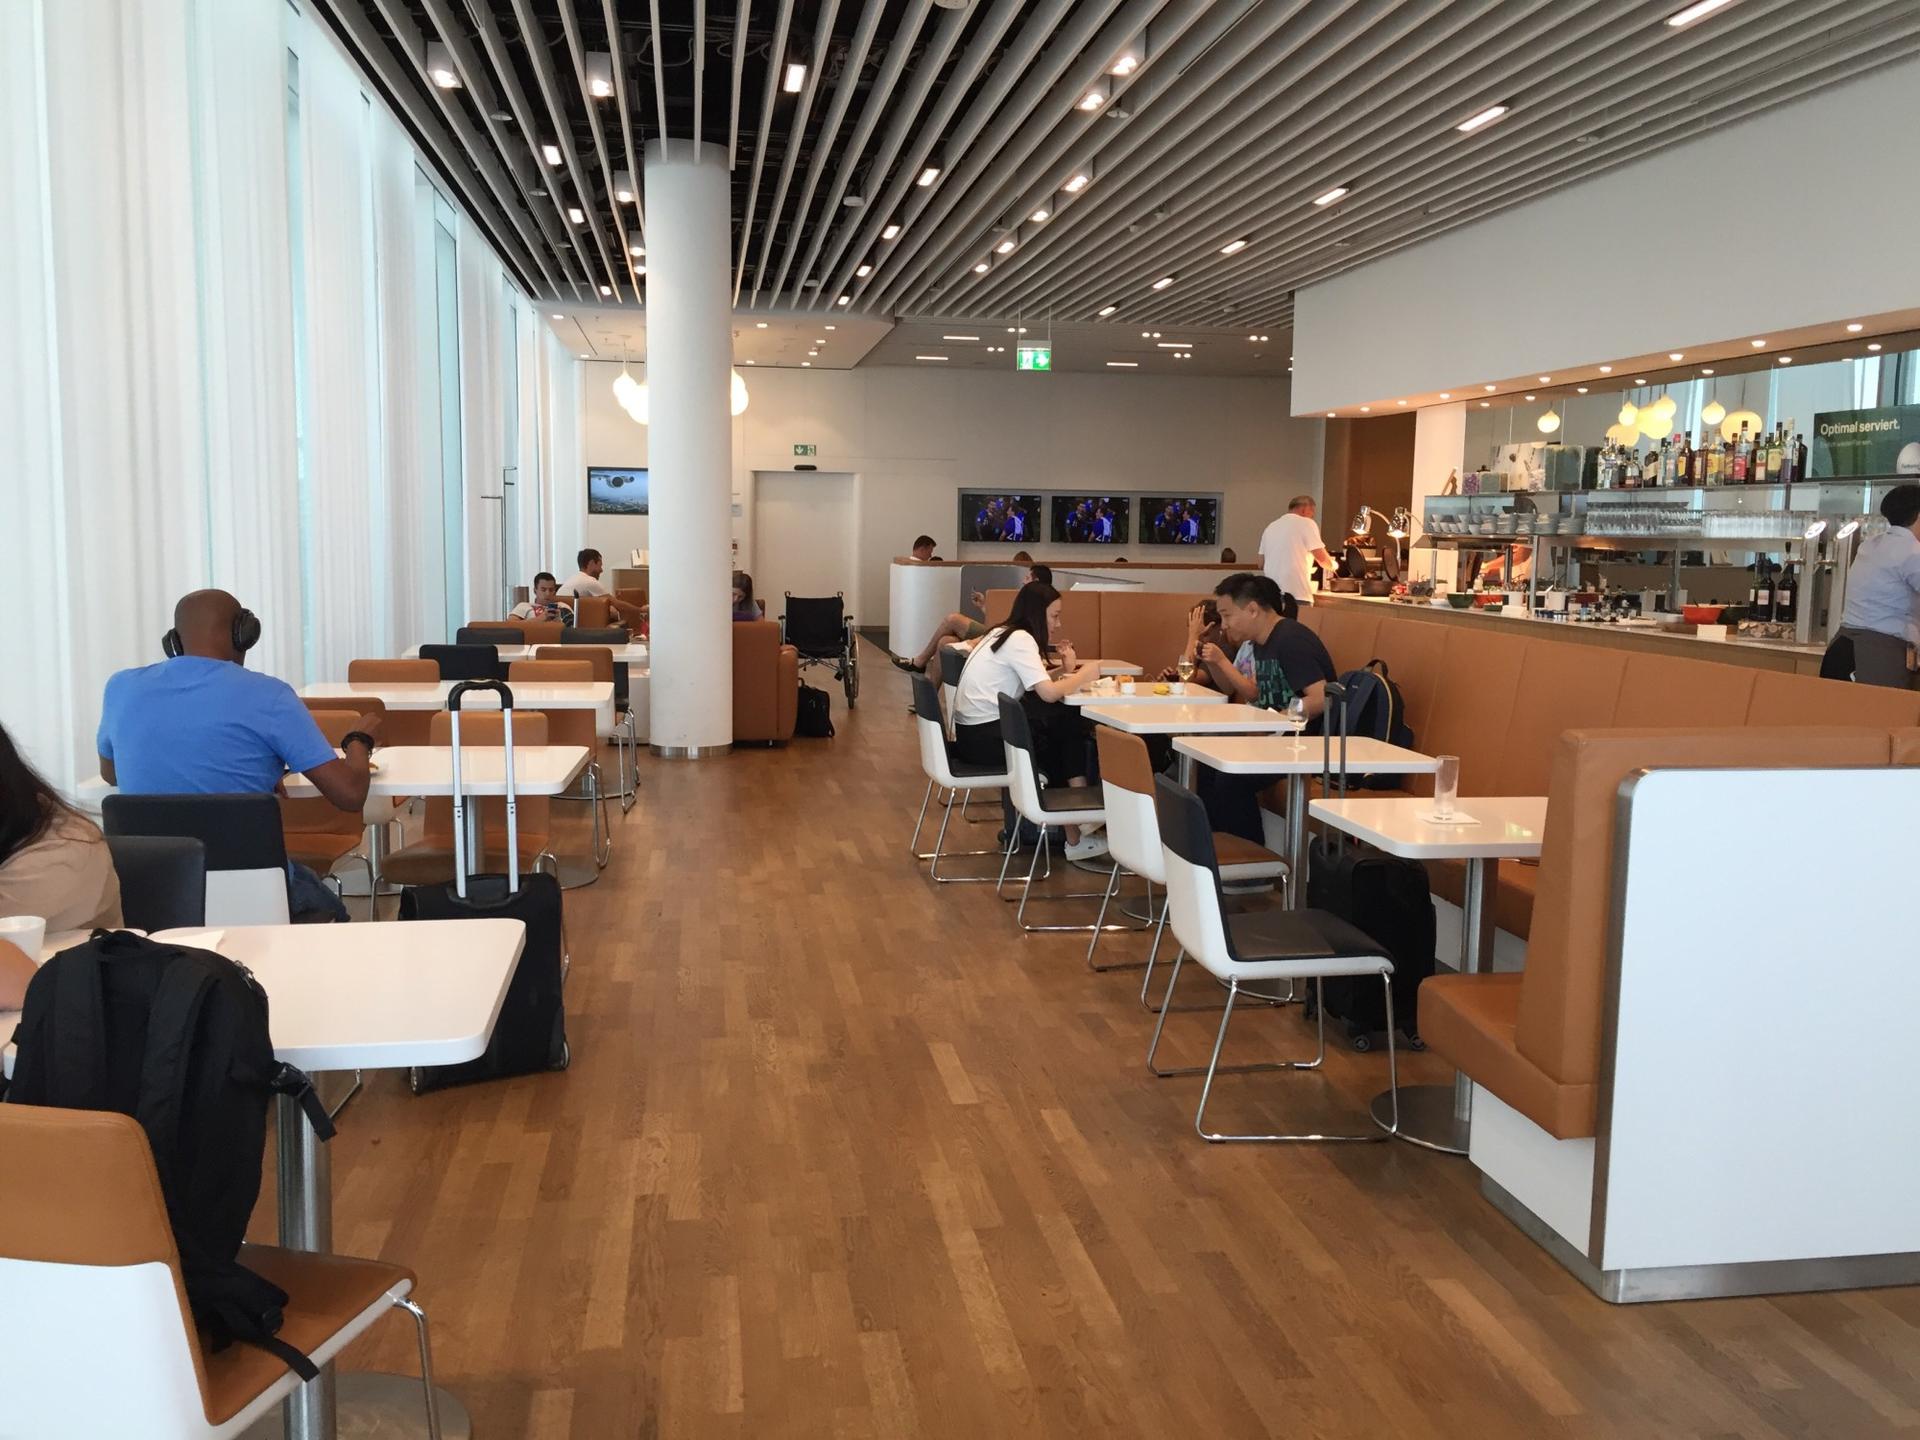 Lufthansa Business Lounge (Schengen) image 8 of 13